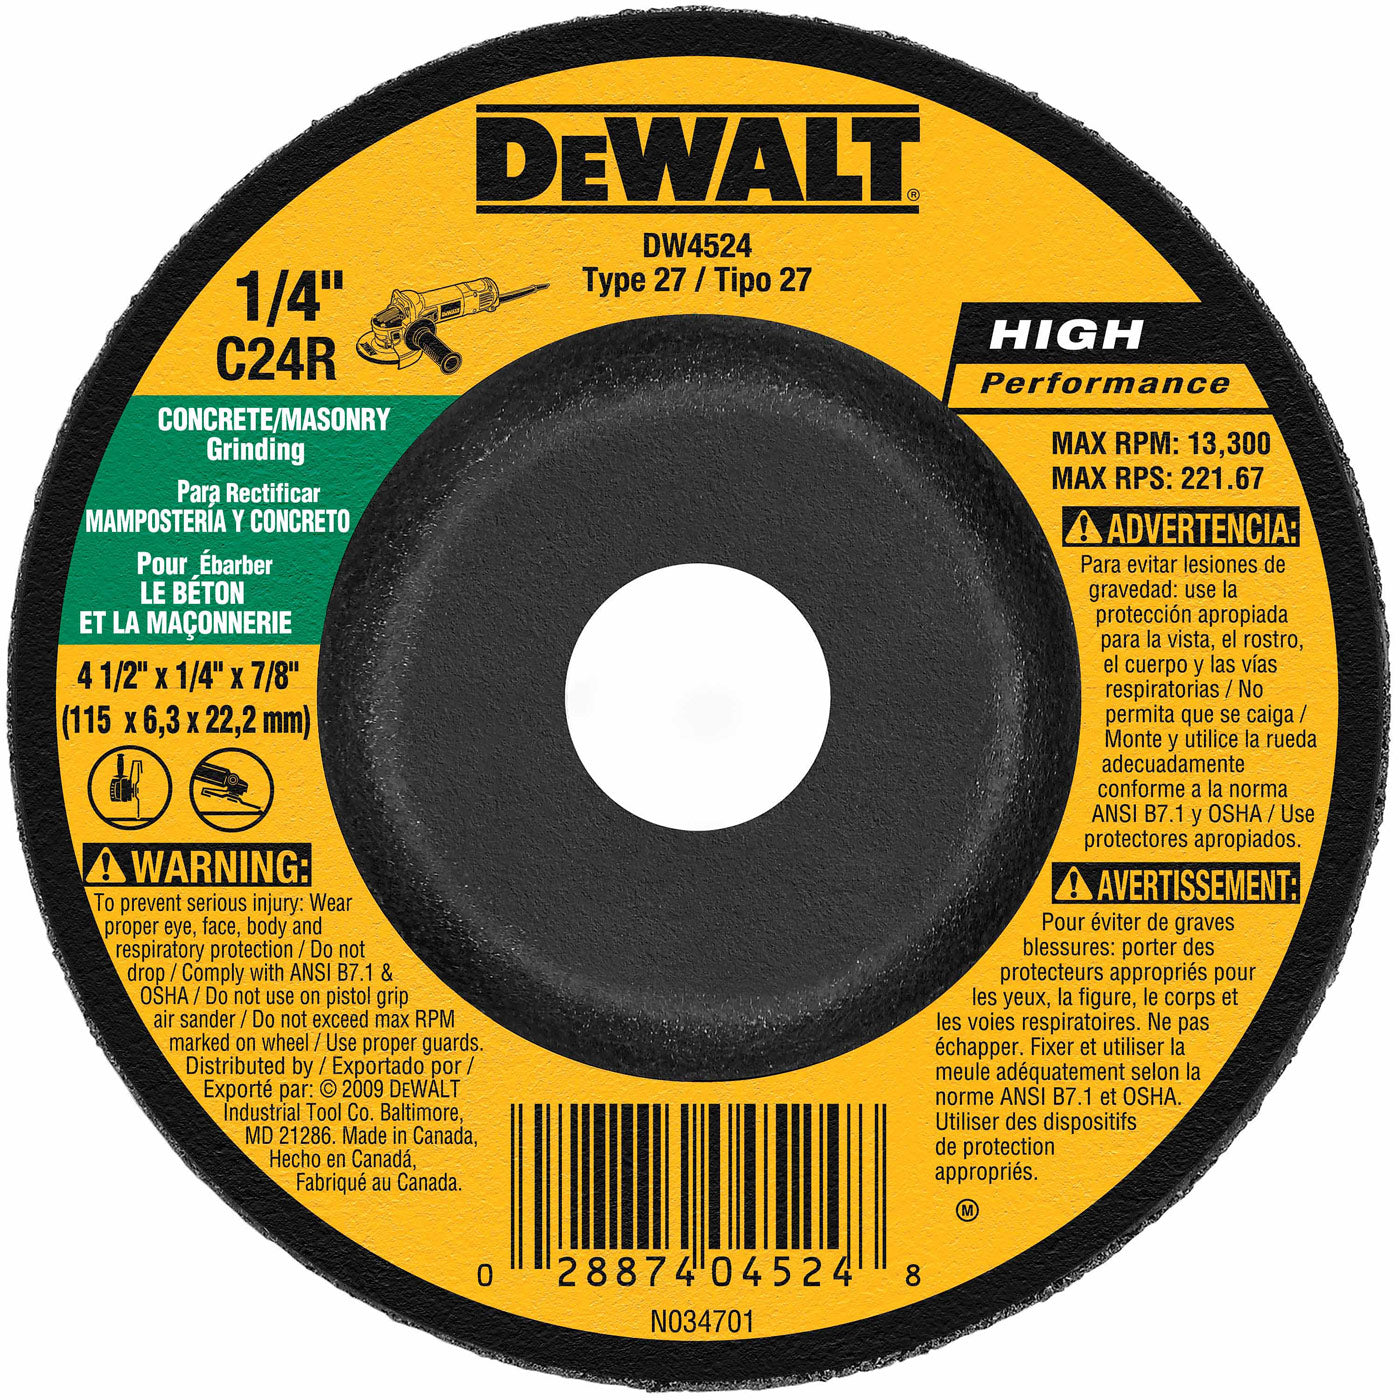 DeWalt DW4524 4-1/2" x 1/4" x 7/8" Concrete/Masonry Grinding Wheel